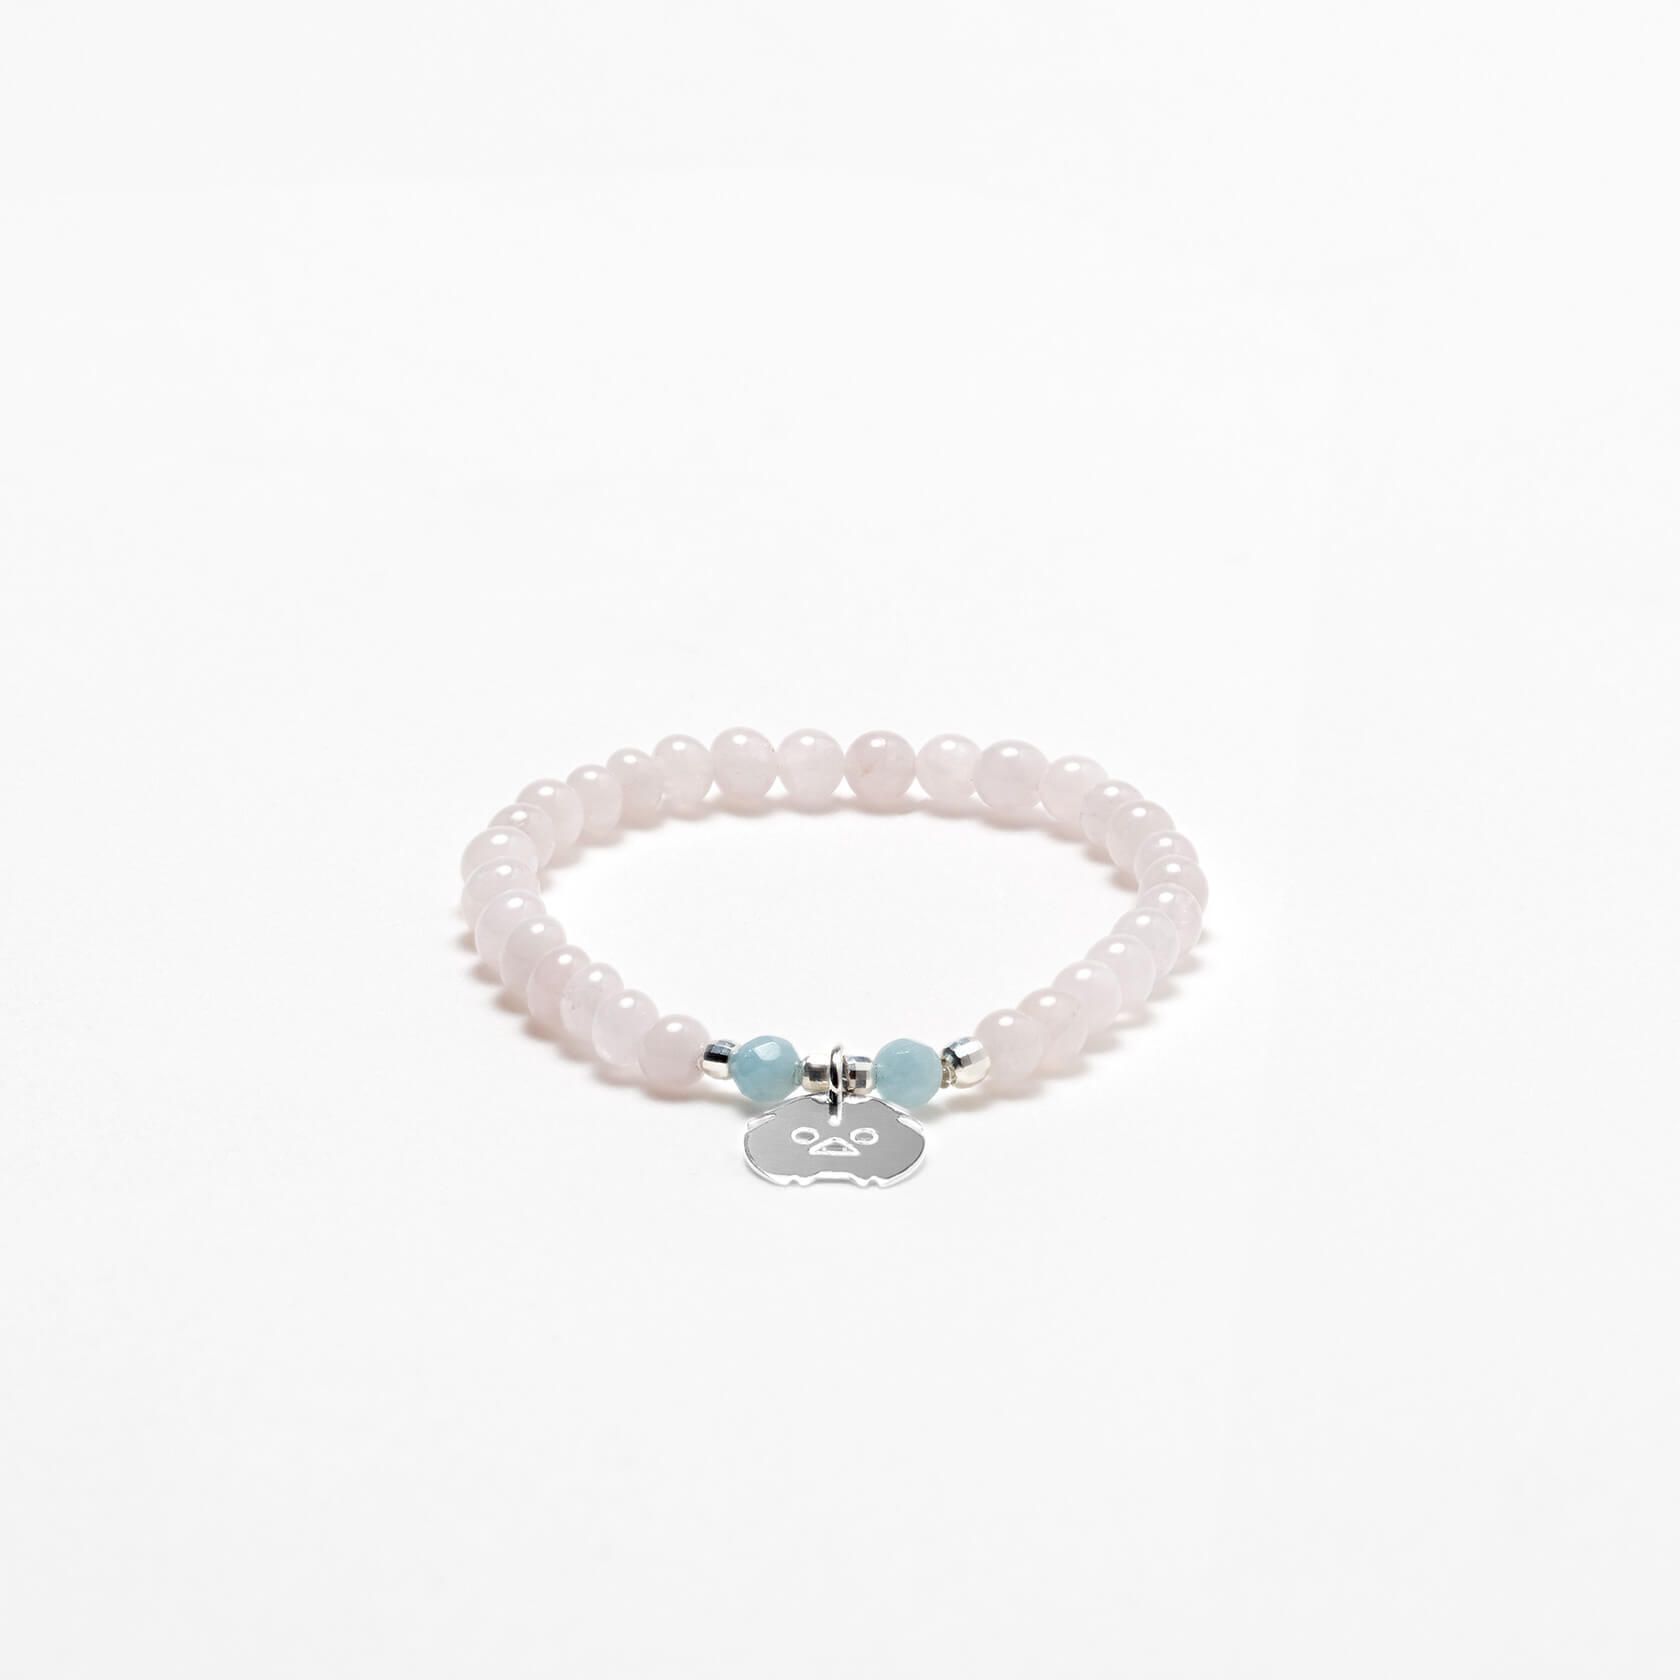 Aquamarine and morganite bracelet 